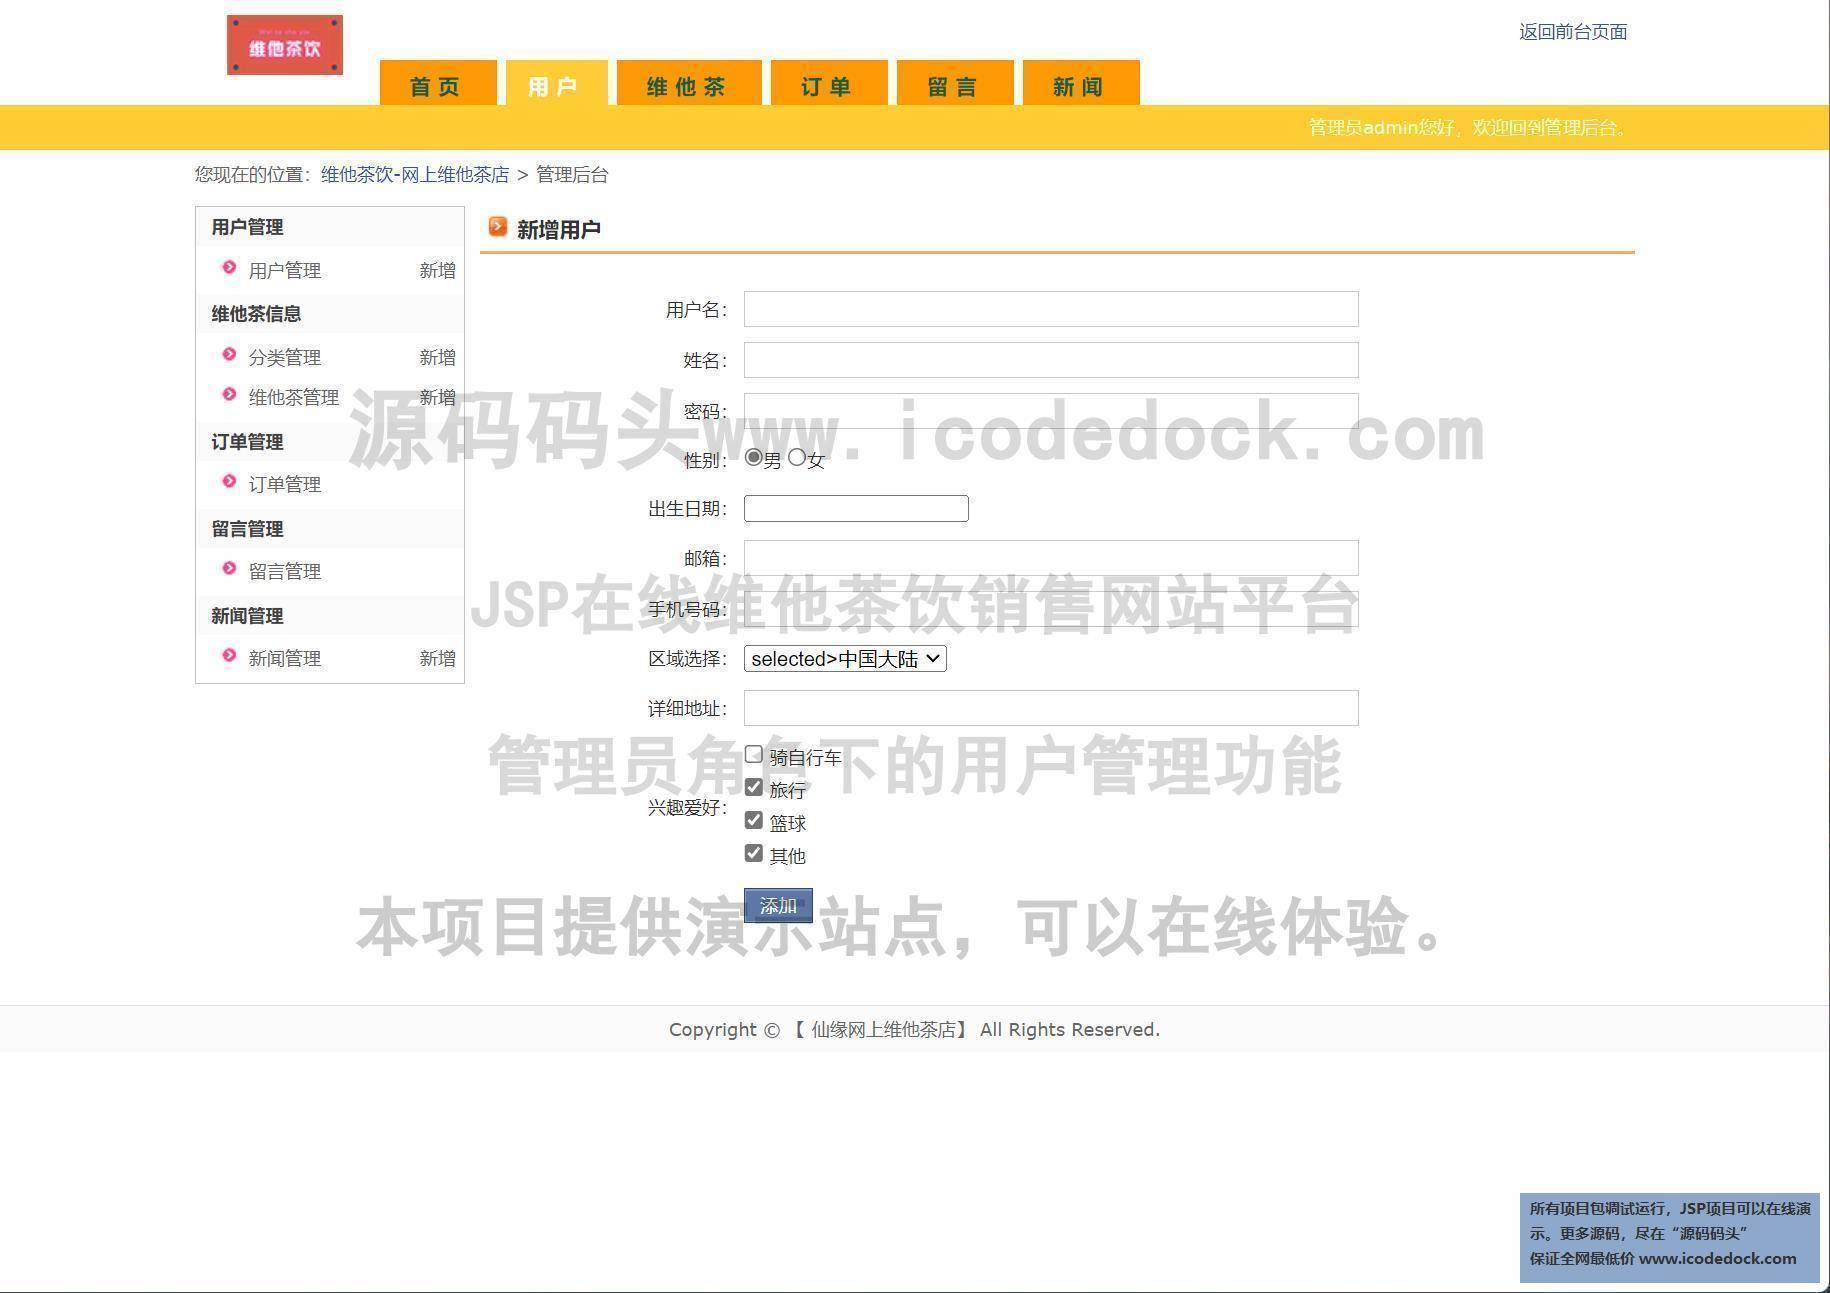 源码码头-JSP在线维他茶饮销售网站平台-管理员角色-用户管理